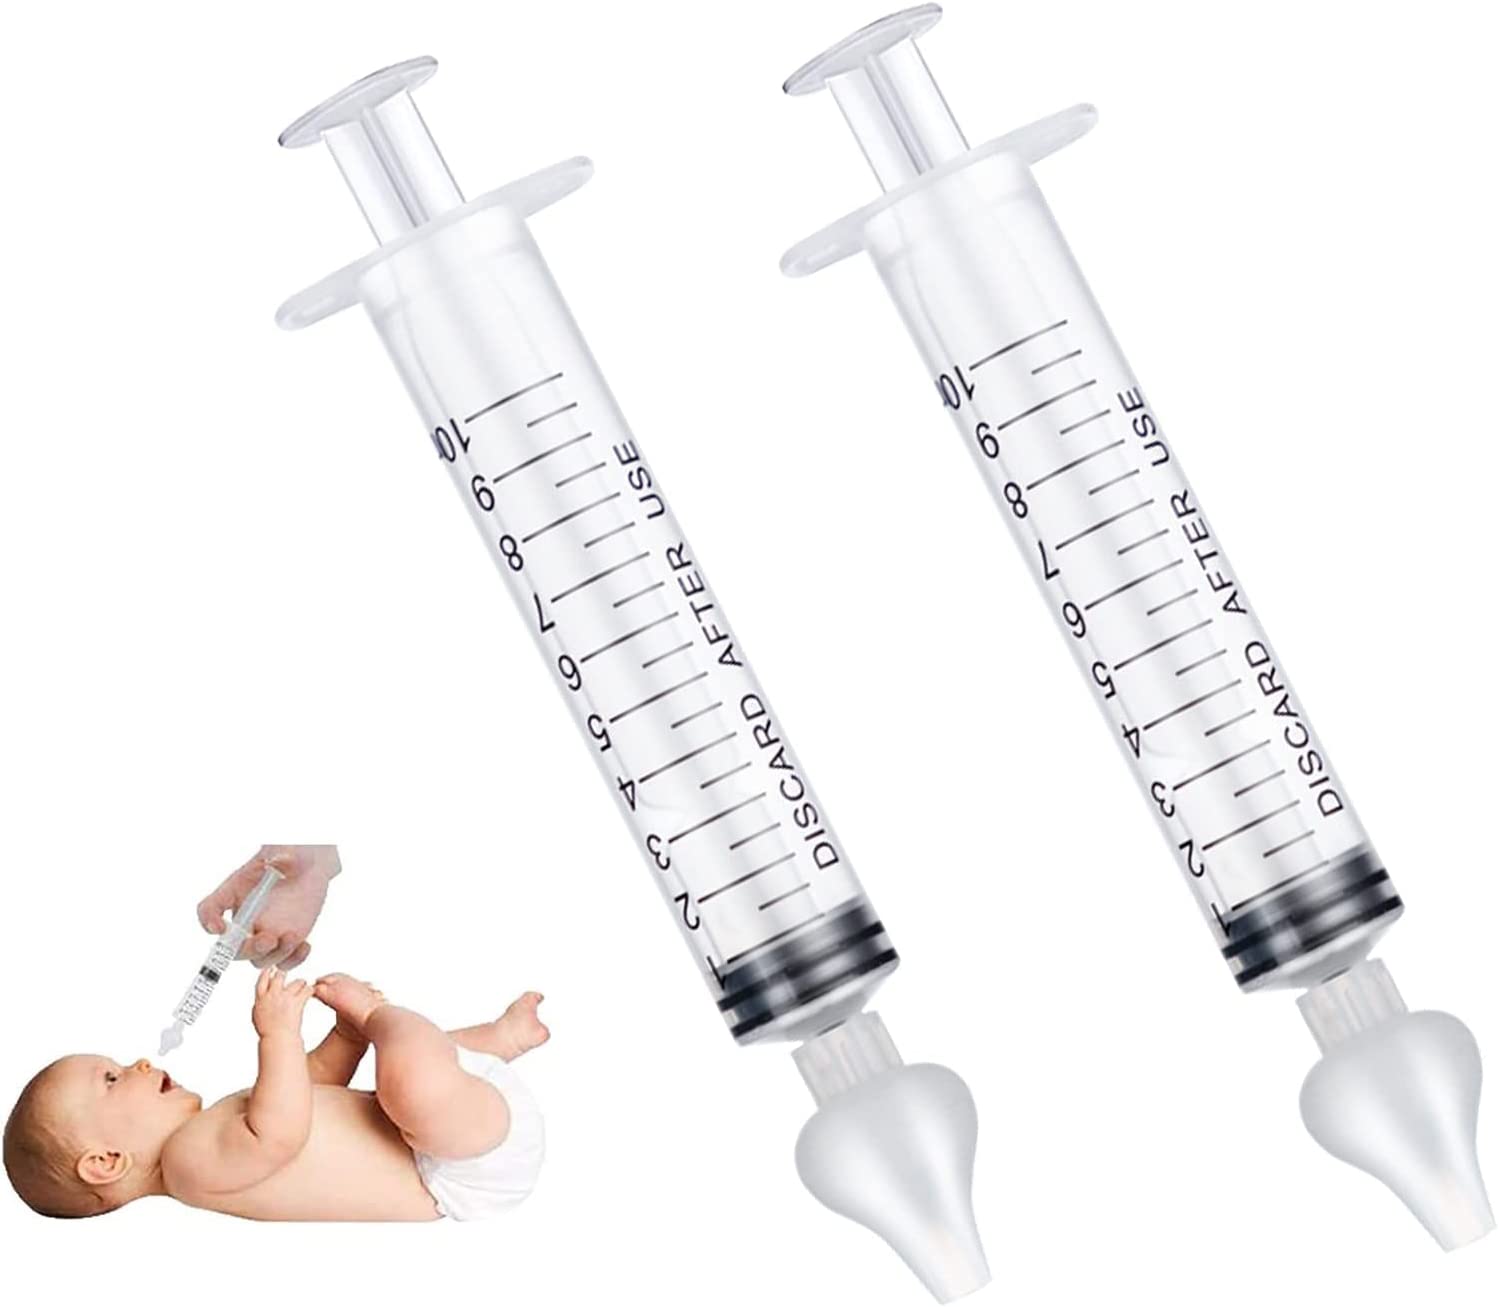 Moucher bébé avec une seringue nasale : pourquoi et comment le faire  correctement ? : Femme Actuelle Le MAG